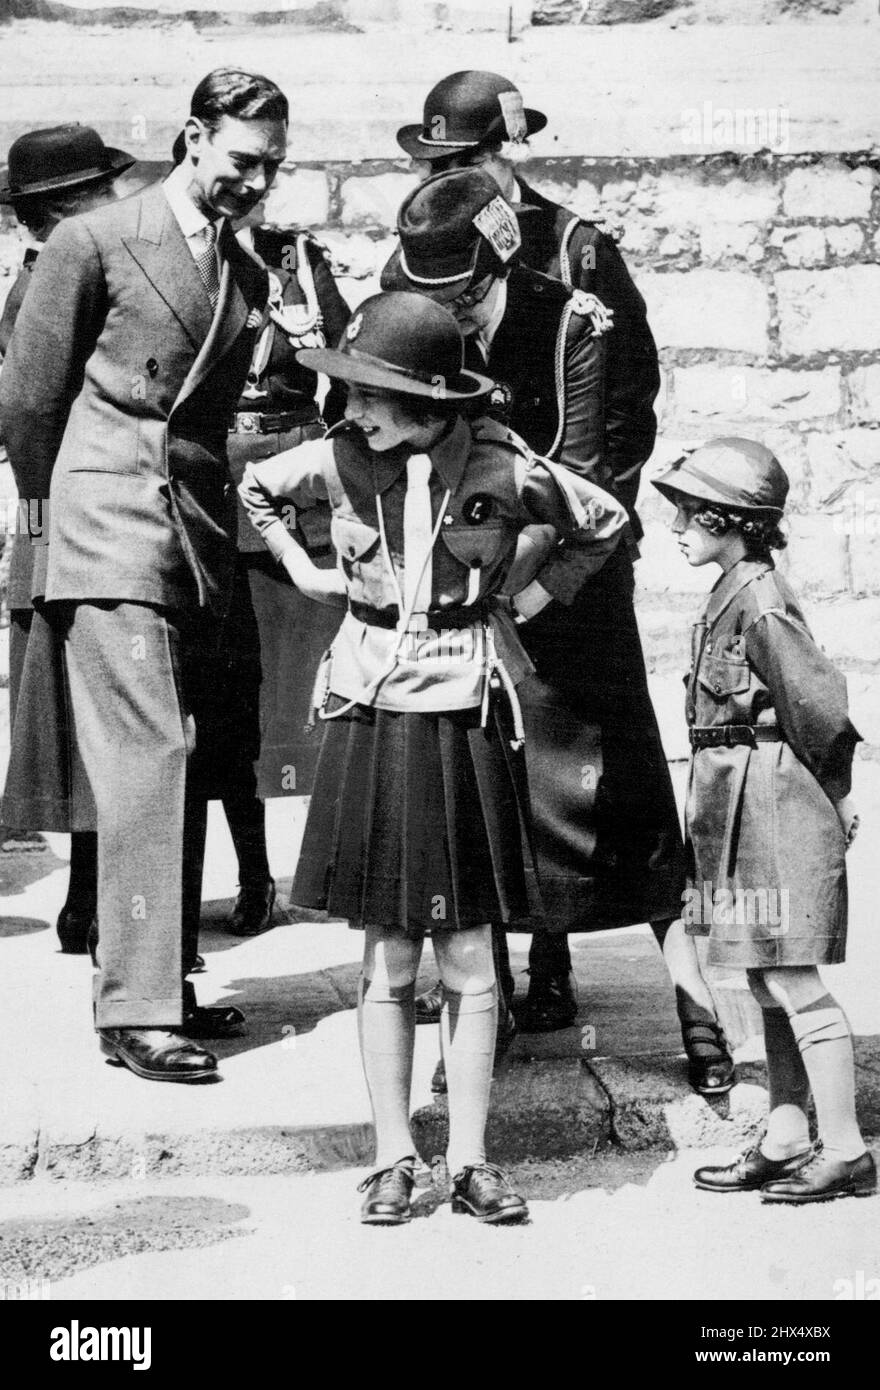 Inspektion von Mädchen-Guides in Windsor Ein charmanter Vorfall während der Märzvergangenheit der Mädchen-Guides. Unser Foto zeigt Prinzessin Elizabeth, die den Gürtel ihrer Uniform justiert hat. Seine Majestät König George VI schaut auf. Prinzessin Margaret ist rechts in der Brownie-Uniform zu sehen. Dies ist das erste Mal, dass die Prinzessinnen eine Veranstaltung in ihrer Girl Guides Uniform besucht haben. 11. Juli 1938. Stockfoto